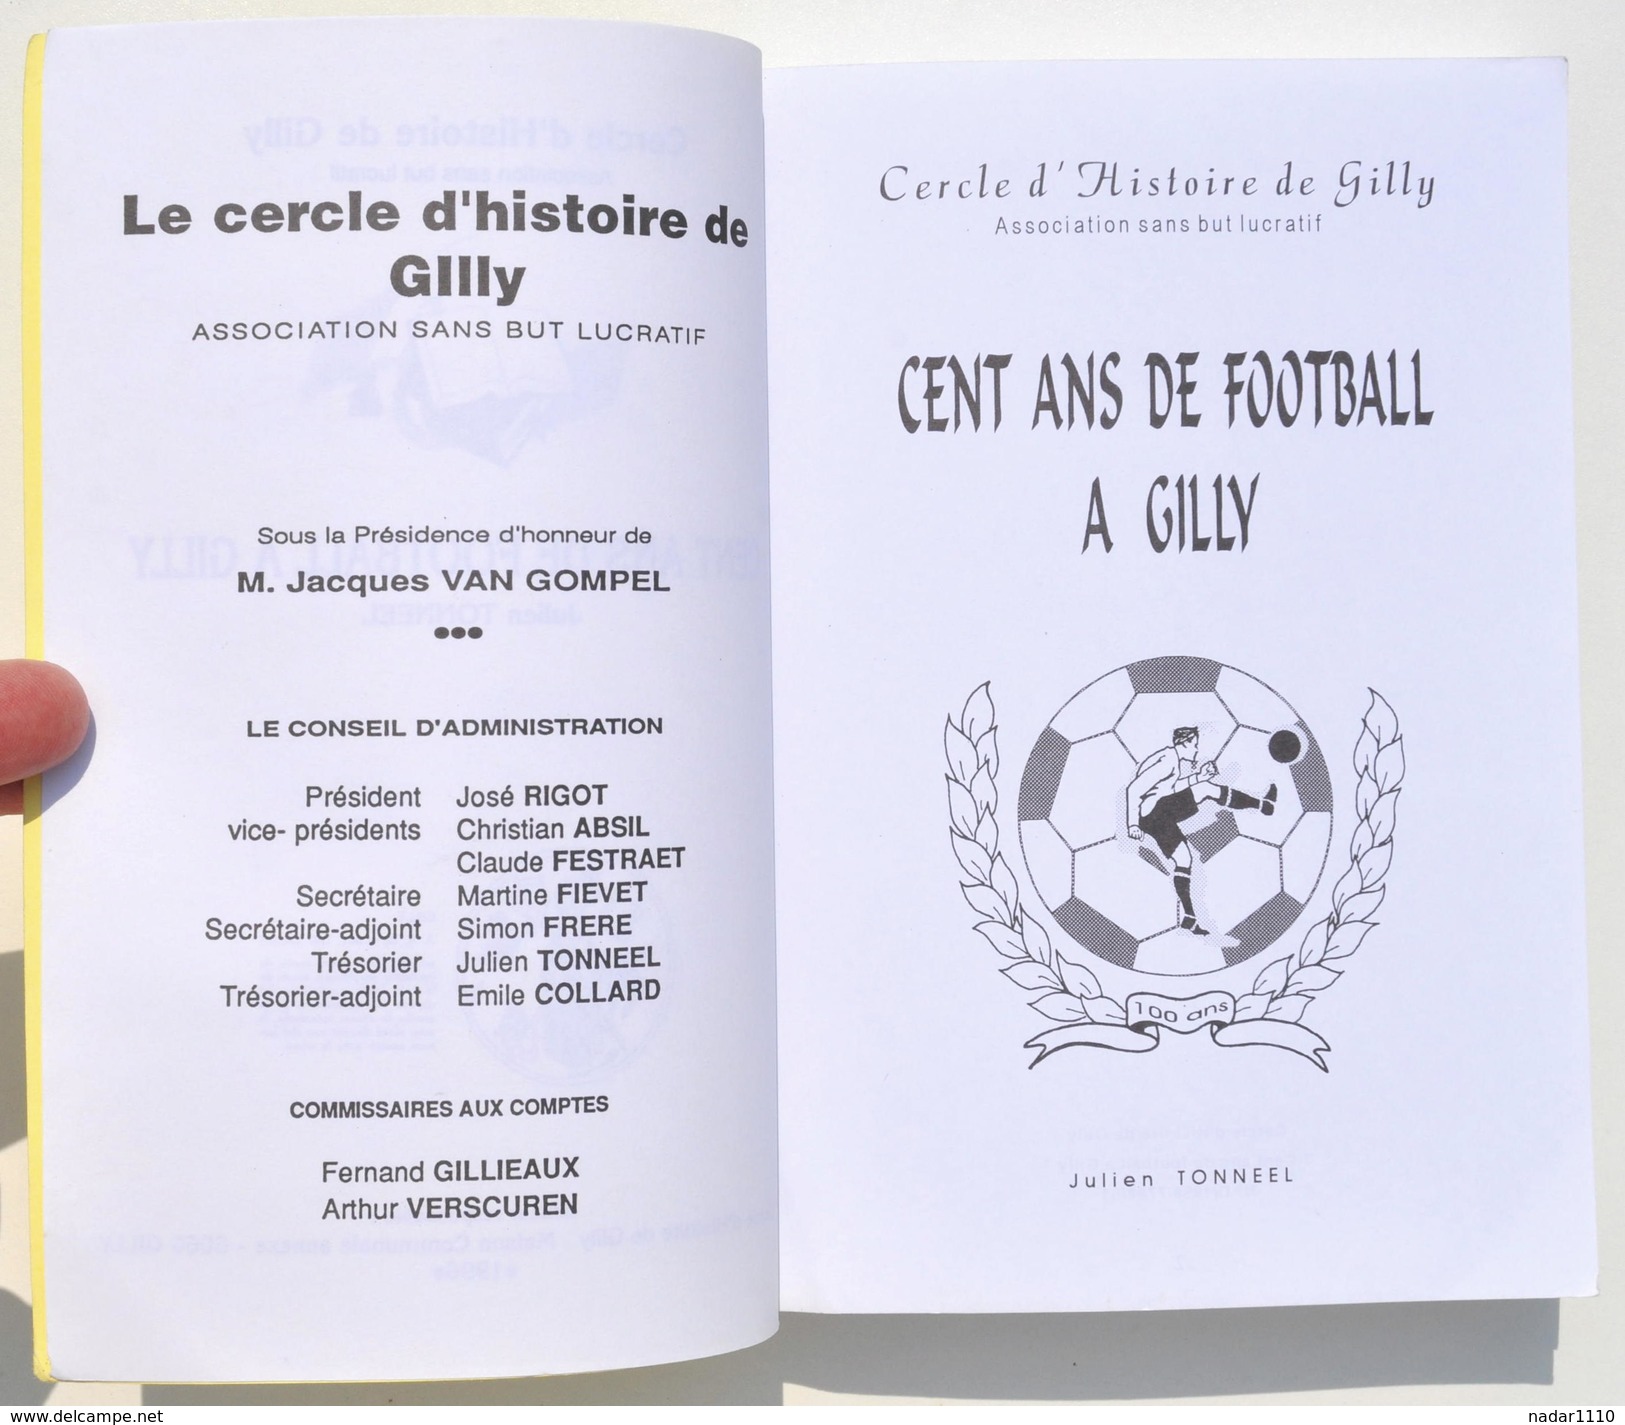 Cent Ans De FOOTBALL à GILLY - Julien Tonneel - Cercle D'Histoire De Gilly, 1996 - Belgium